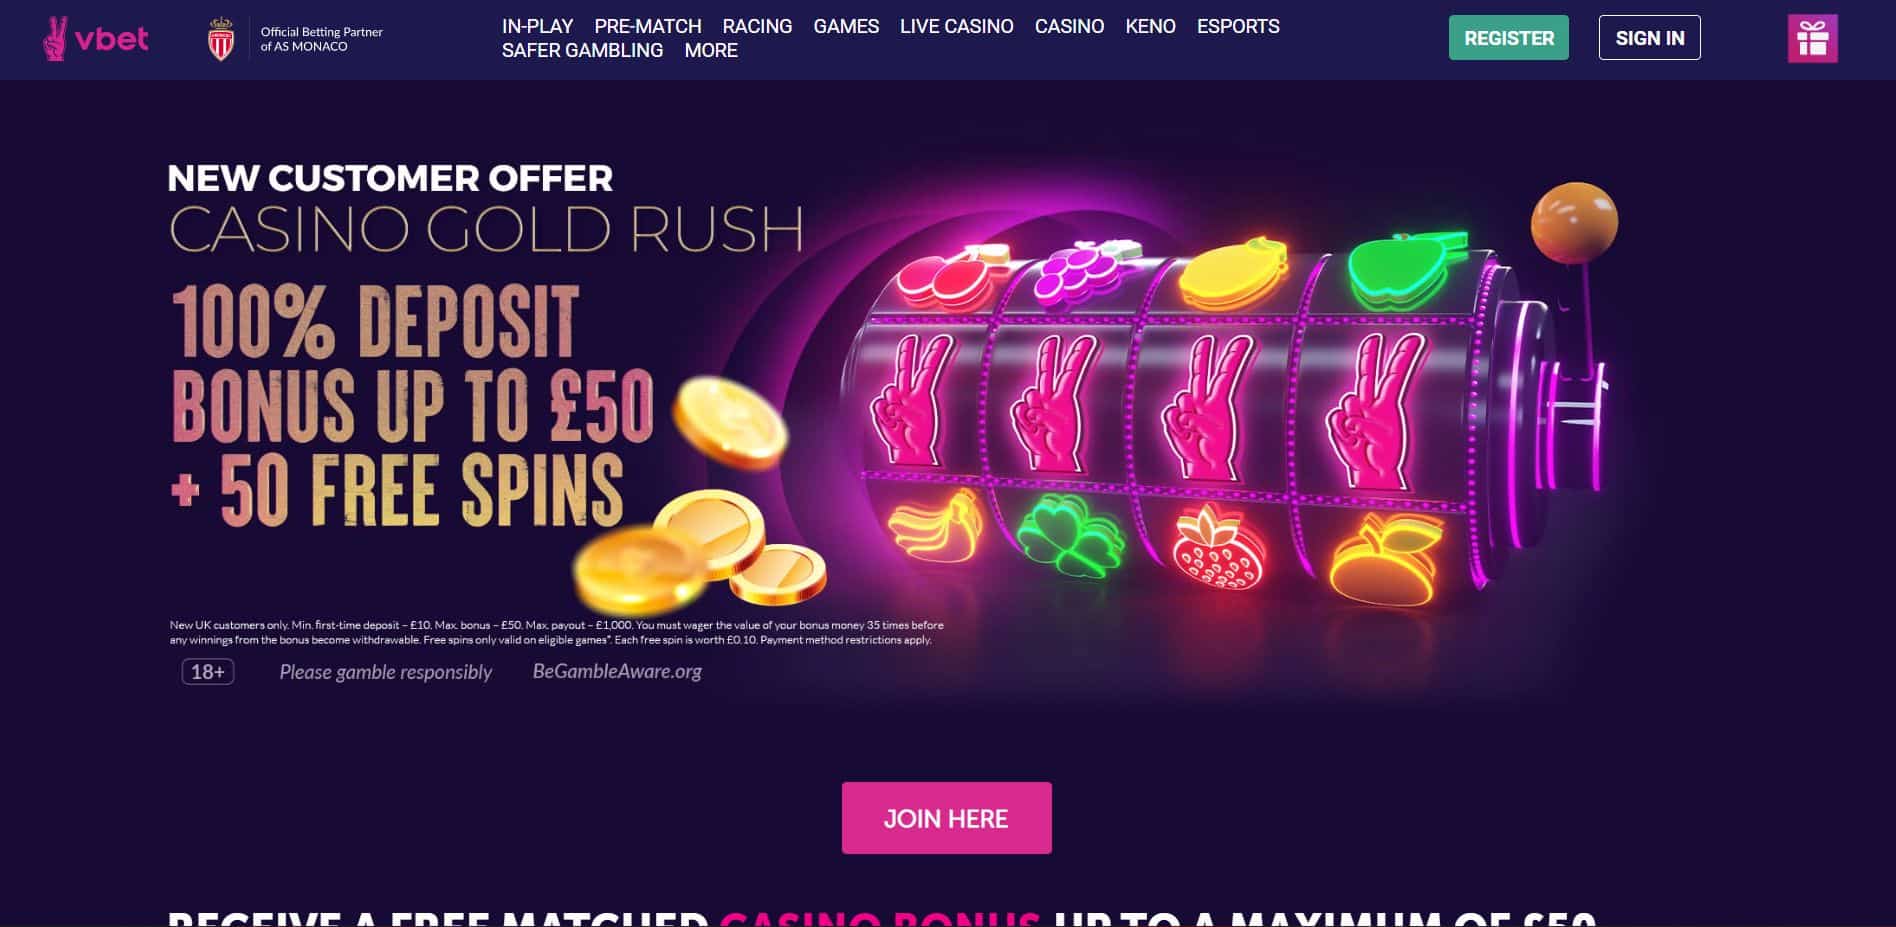 V Bet Casino offer